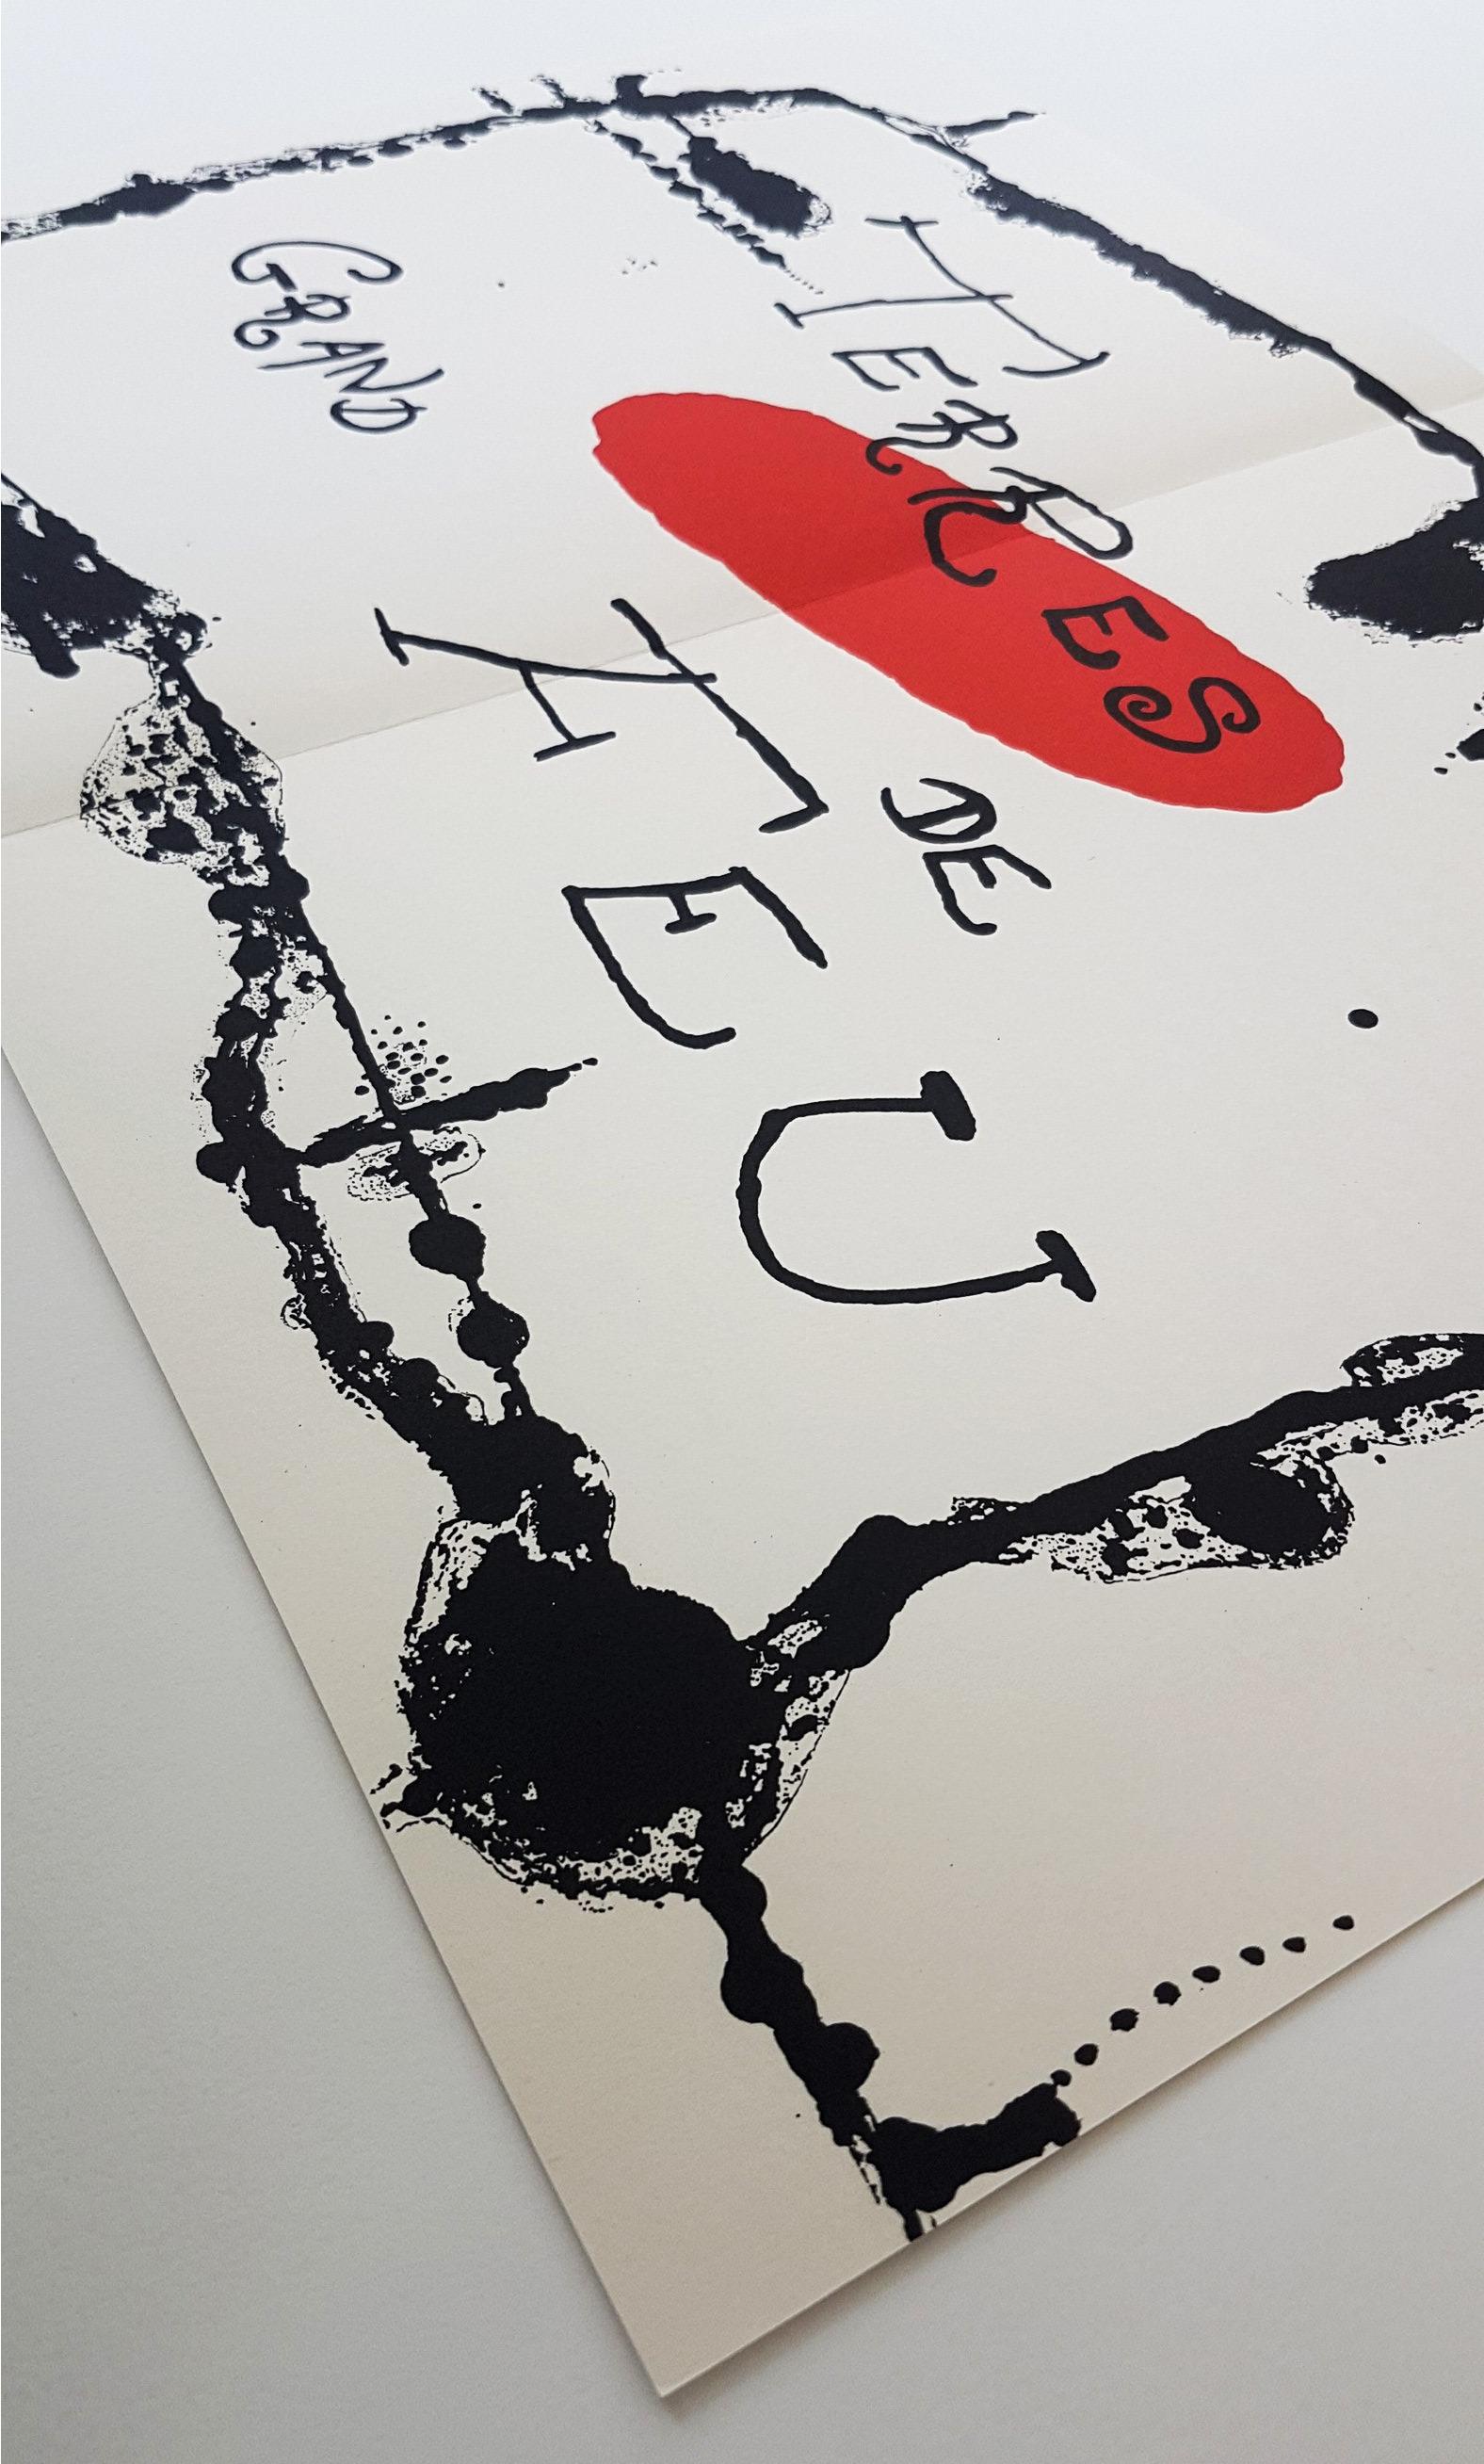 Terres Grand de Feu (ein Teller von Artigas) – Print von Joan Miró